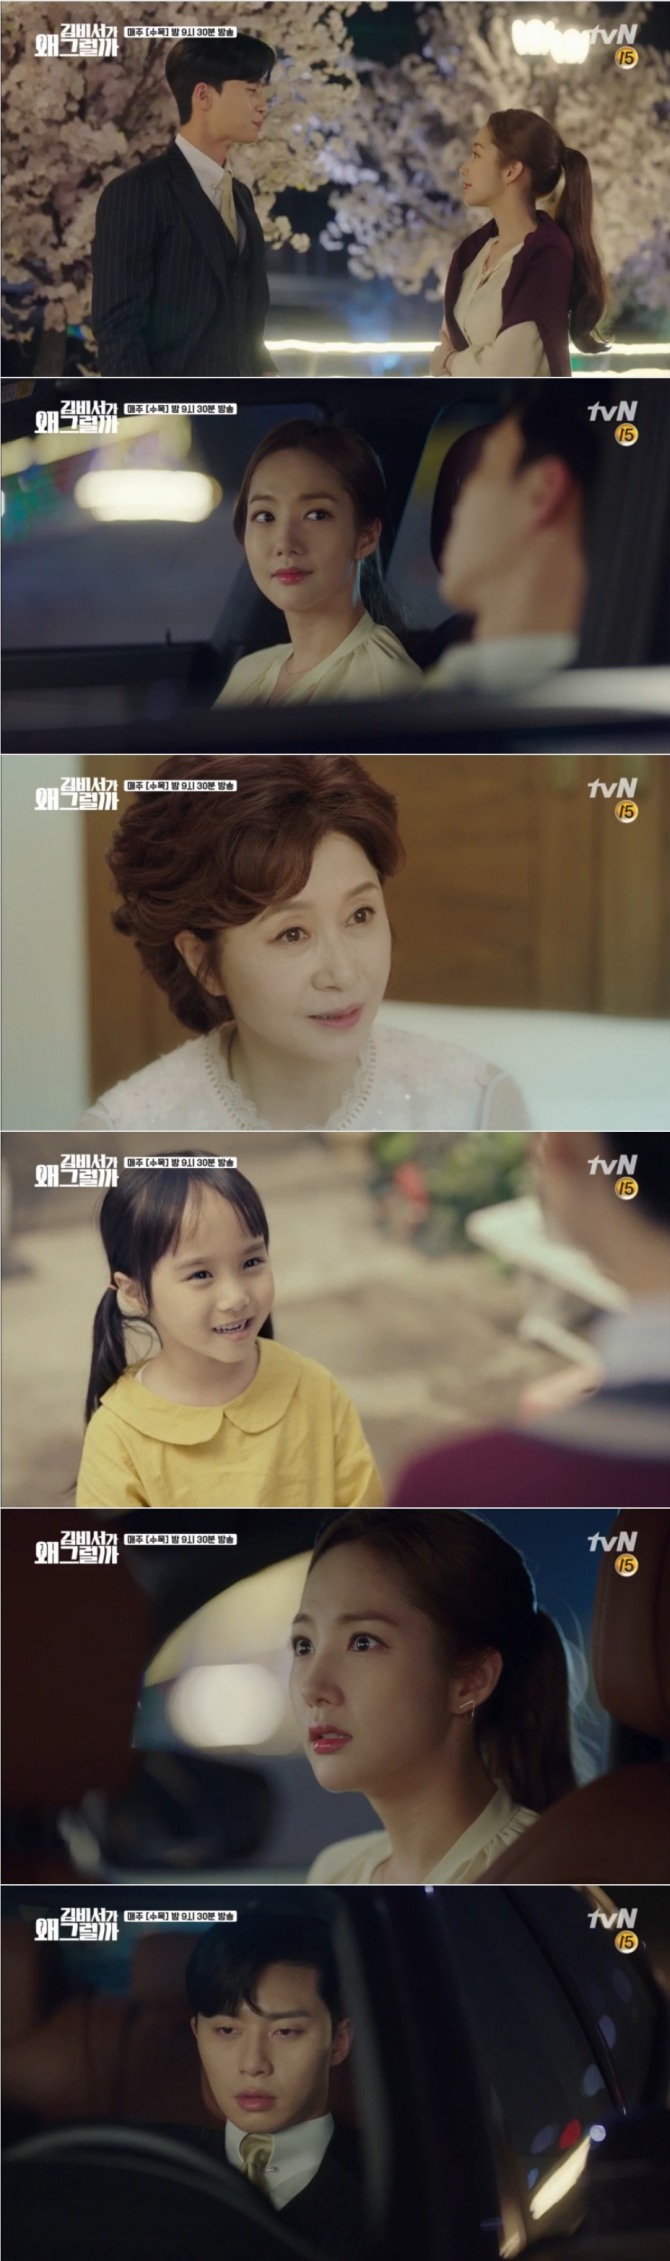 4일 방송된 tvN 수목드라마 '김비서가 왜 그럴까' 9회에서는 김미소(박민영)가 이영준(박서준)이 바로 어릴 대 함께 유과됐던 오빠임을 기억해내는 극적인 반전이 그려졌다. 사진=tvN 방송 캡처 